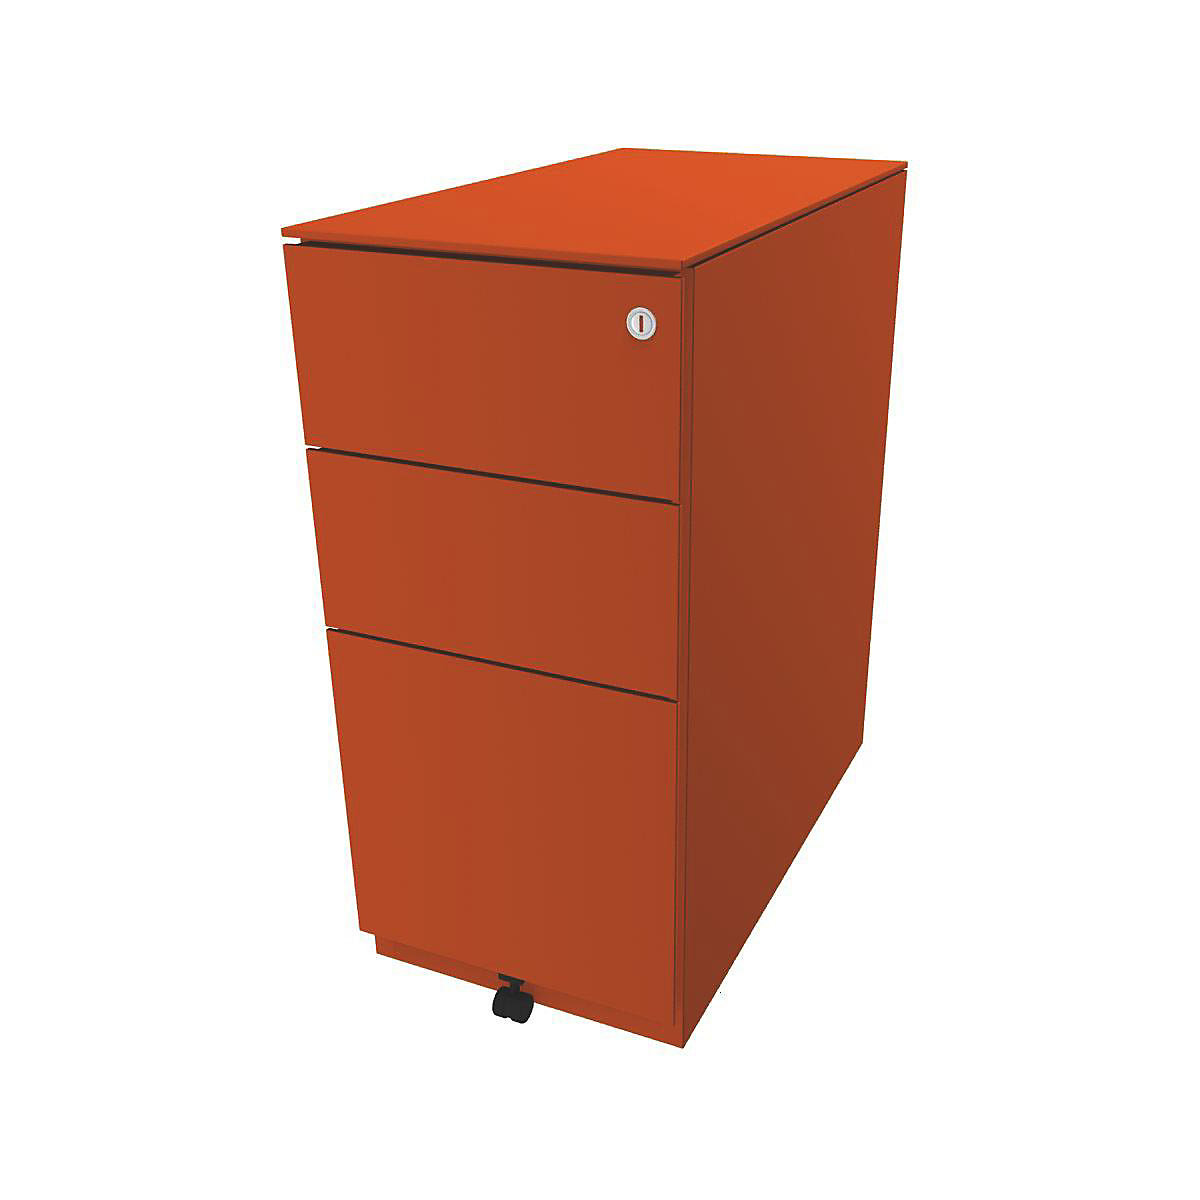 Pojazdný kontajner Note™, s 2 univerzálnymi zásuvkami, 1 závesná registratúra – BISLEY, v x š x h 652 x 300 x 565 mm, s hornou doskou, oranžová-6